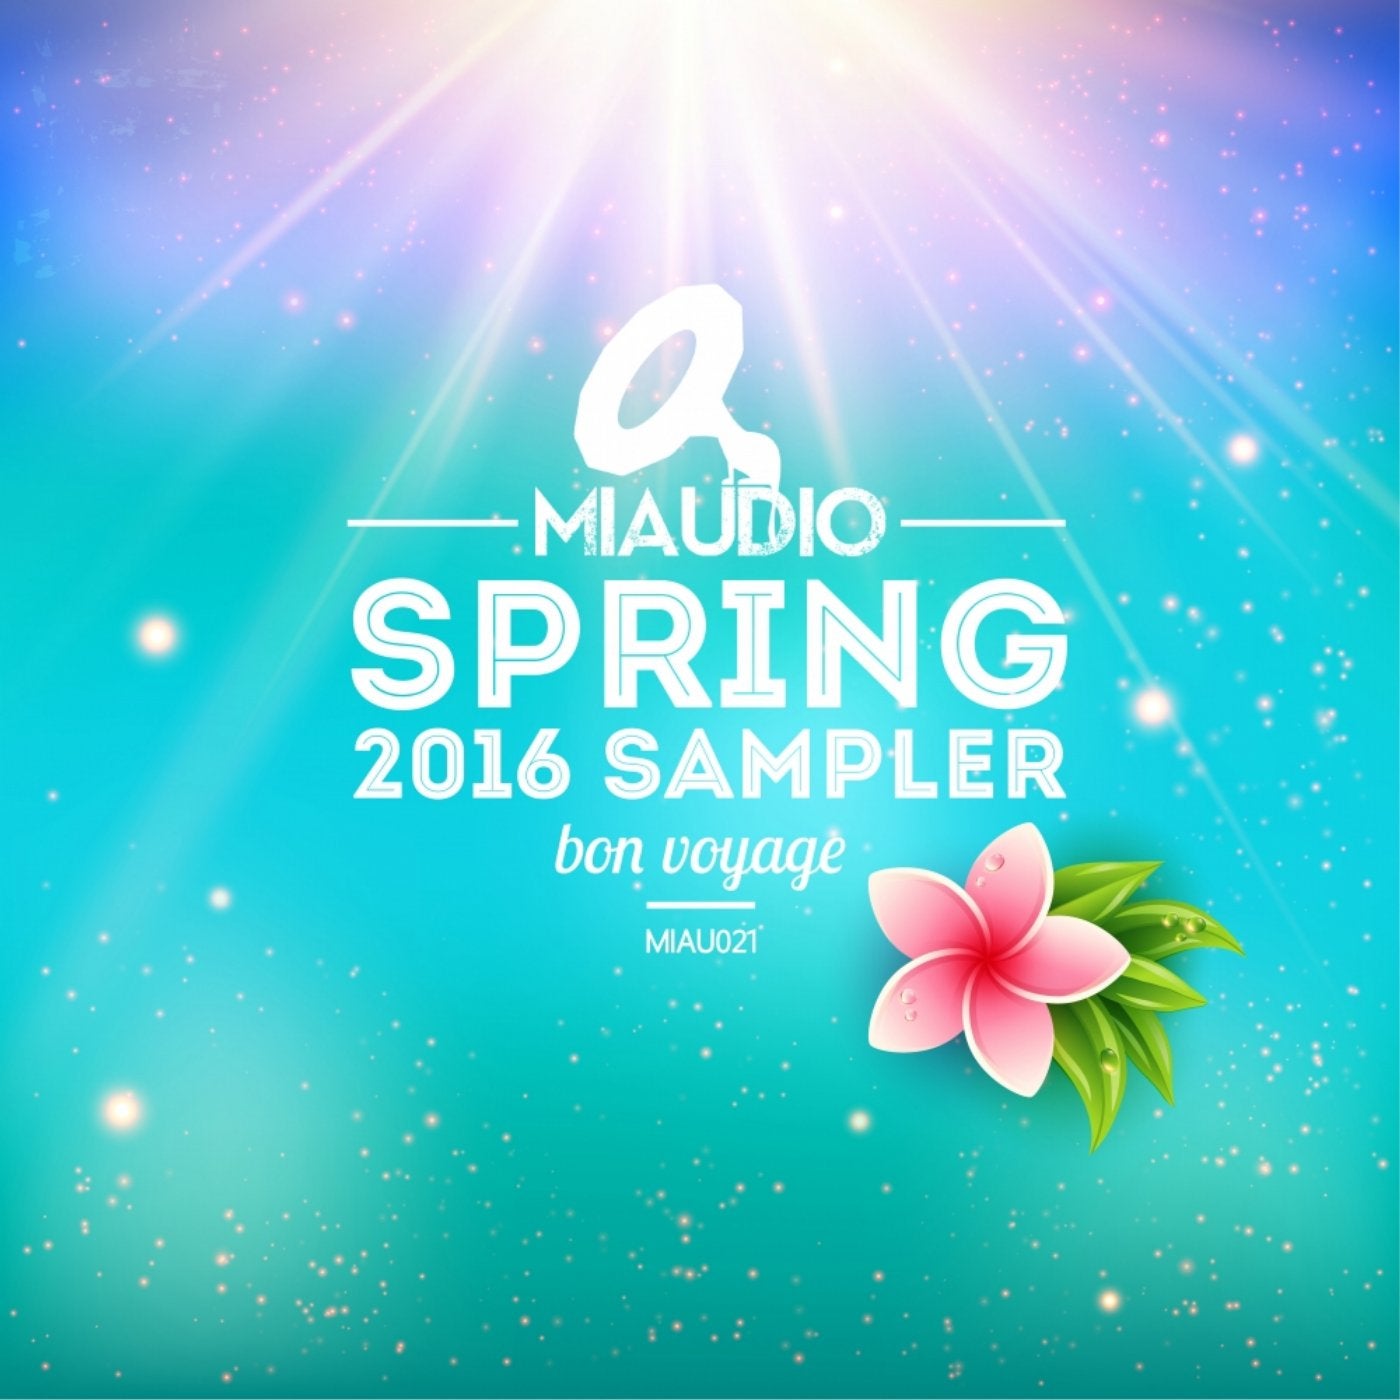 MIAUDIO Spring Sampler 2016